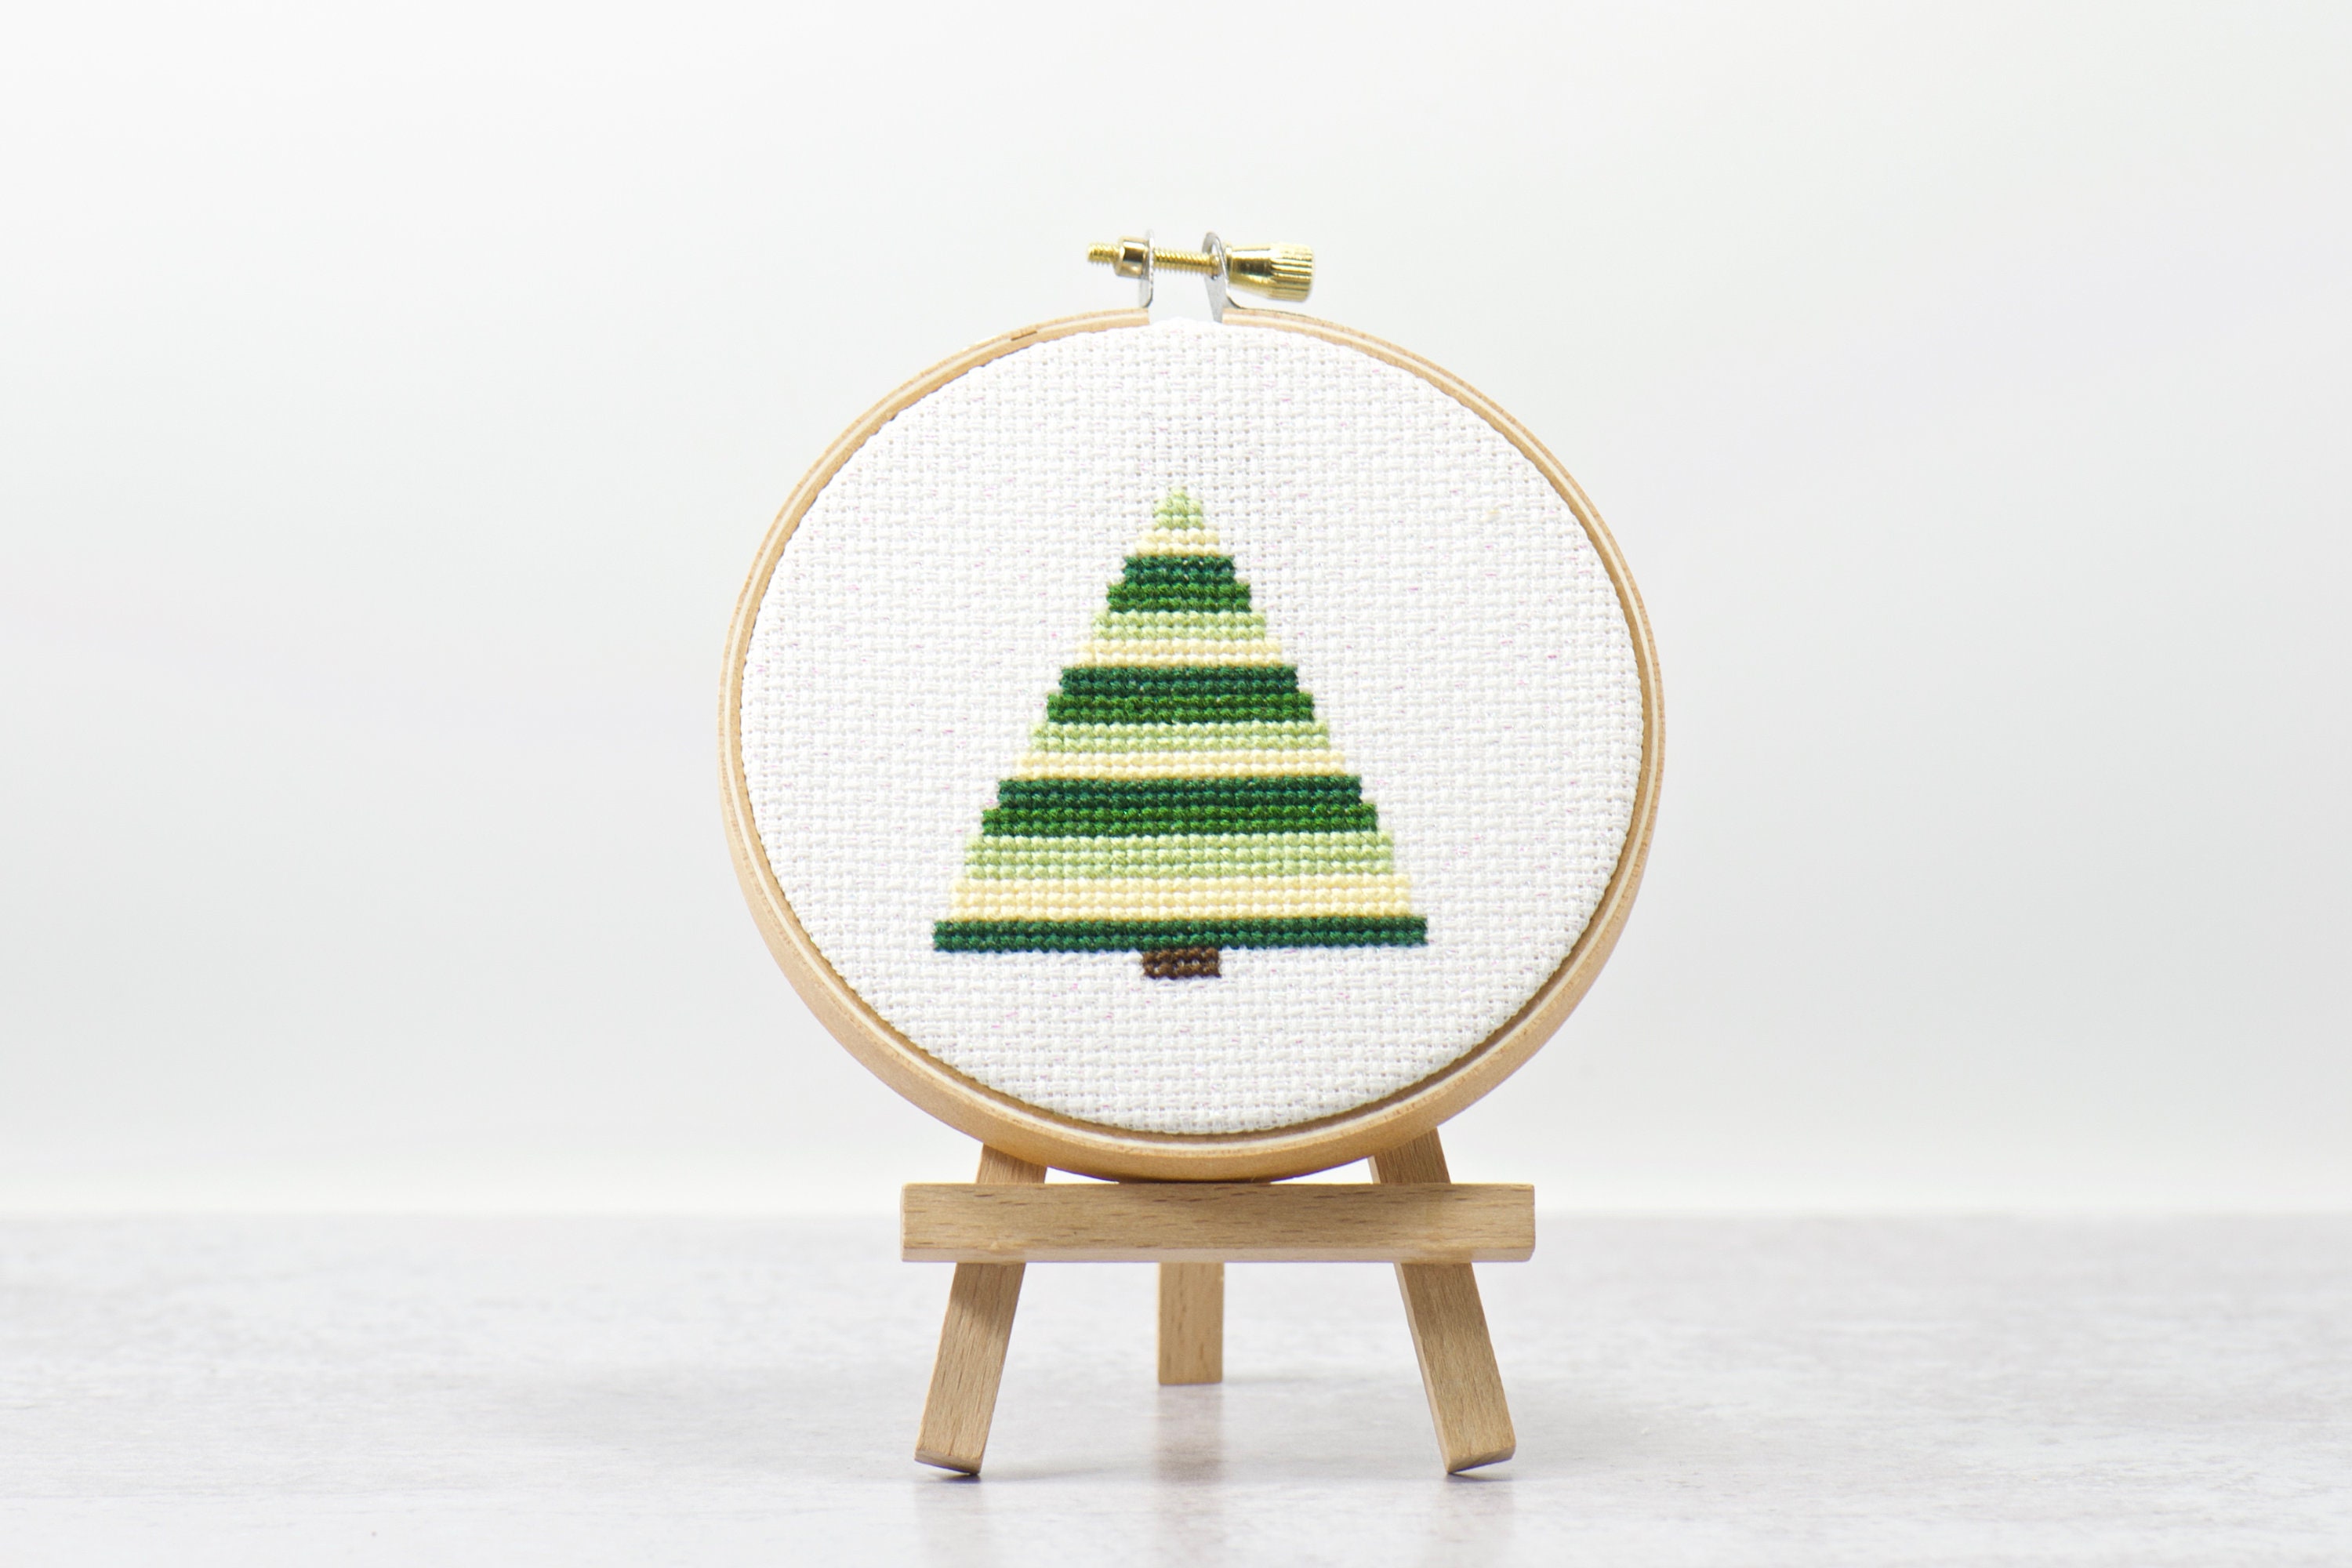 Christmas Ornaments, Modern Christmas Cross Stitch, Christmas Tree, Cross  Stitch Pattern, Funny Cross Stitch, Merry Christmas Cross Stitch 